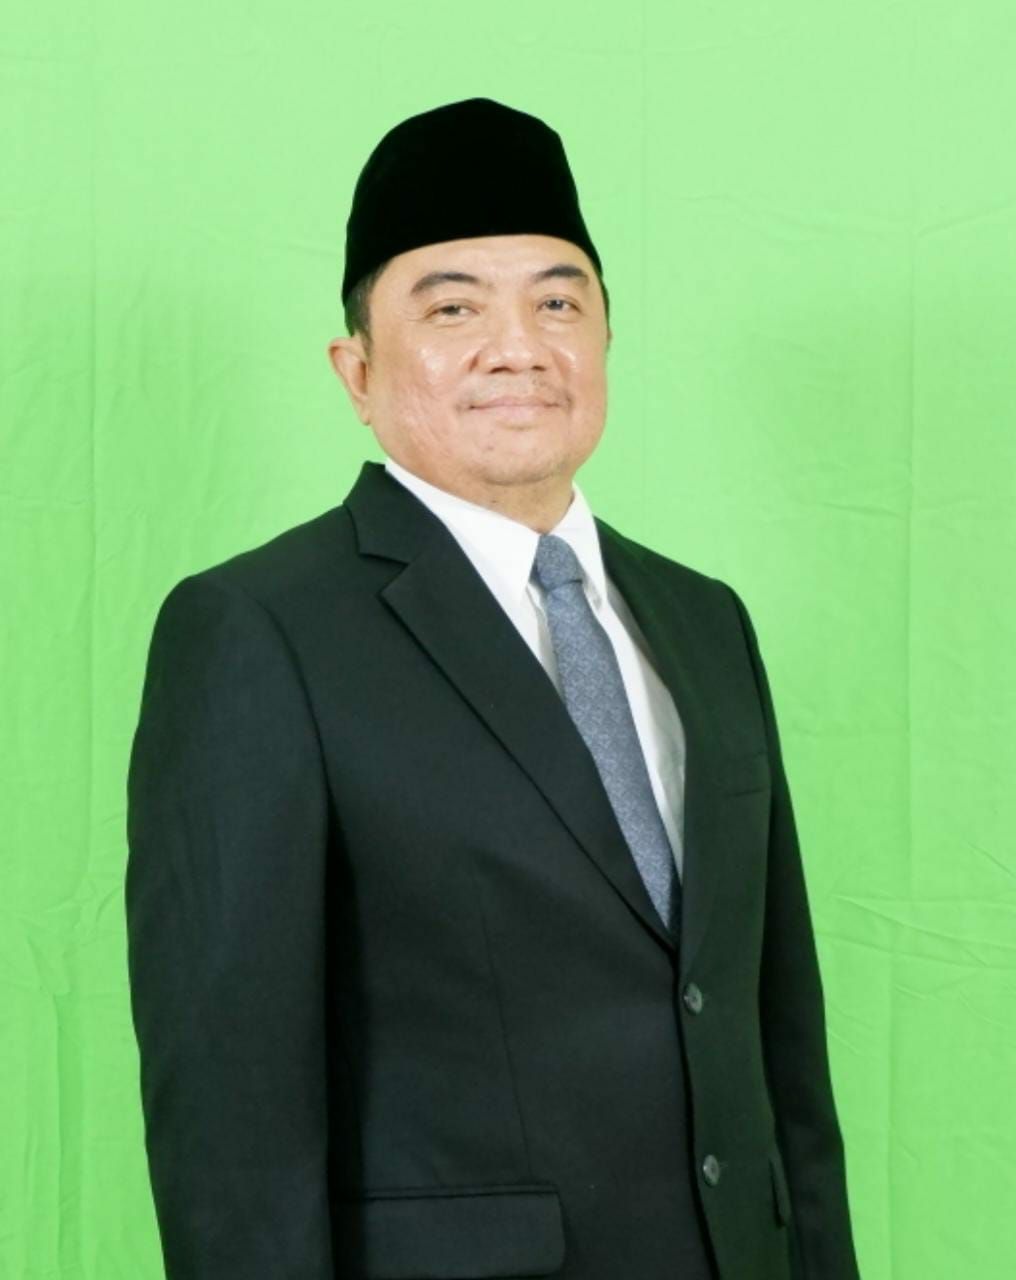 Abdusy Syakur Amien calon kuat  sebagai bakal calon bupati/wakil Bupati Garut, yang akan bertarung di Pemilihan Kepala Daerah (Pilkada) Kabupaten Garut, 2024 mendatang. 